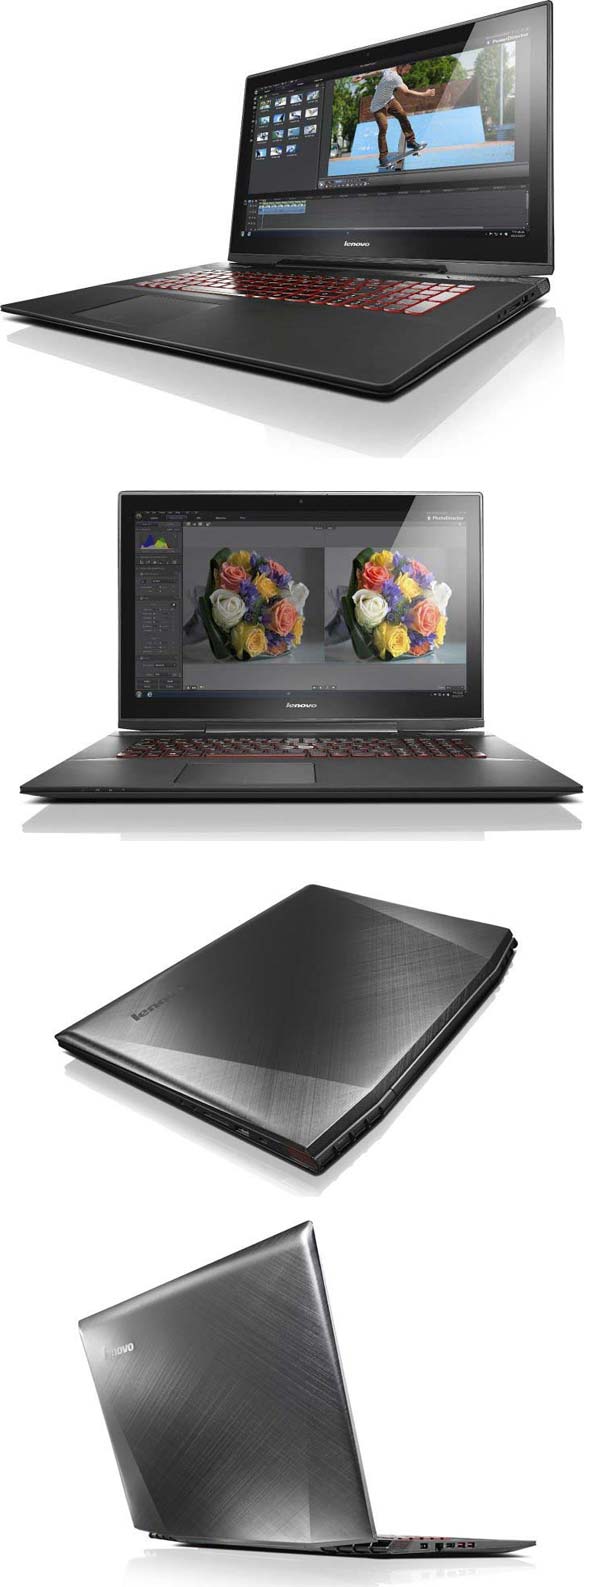 Игровой ноутбук Lenovo IdeaPad Y70 Touch